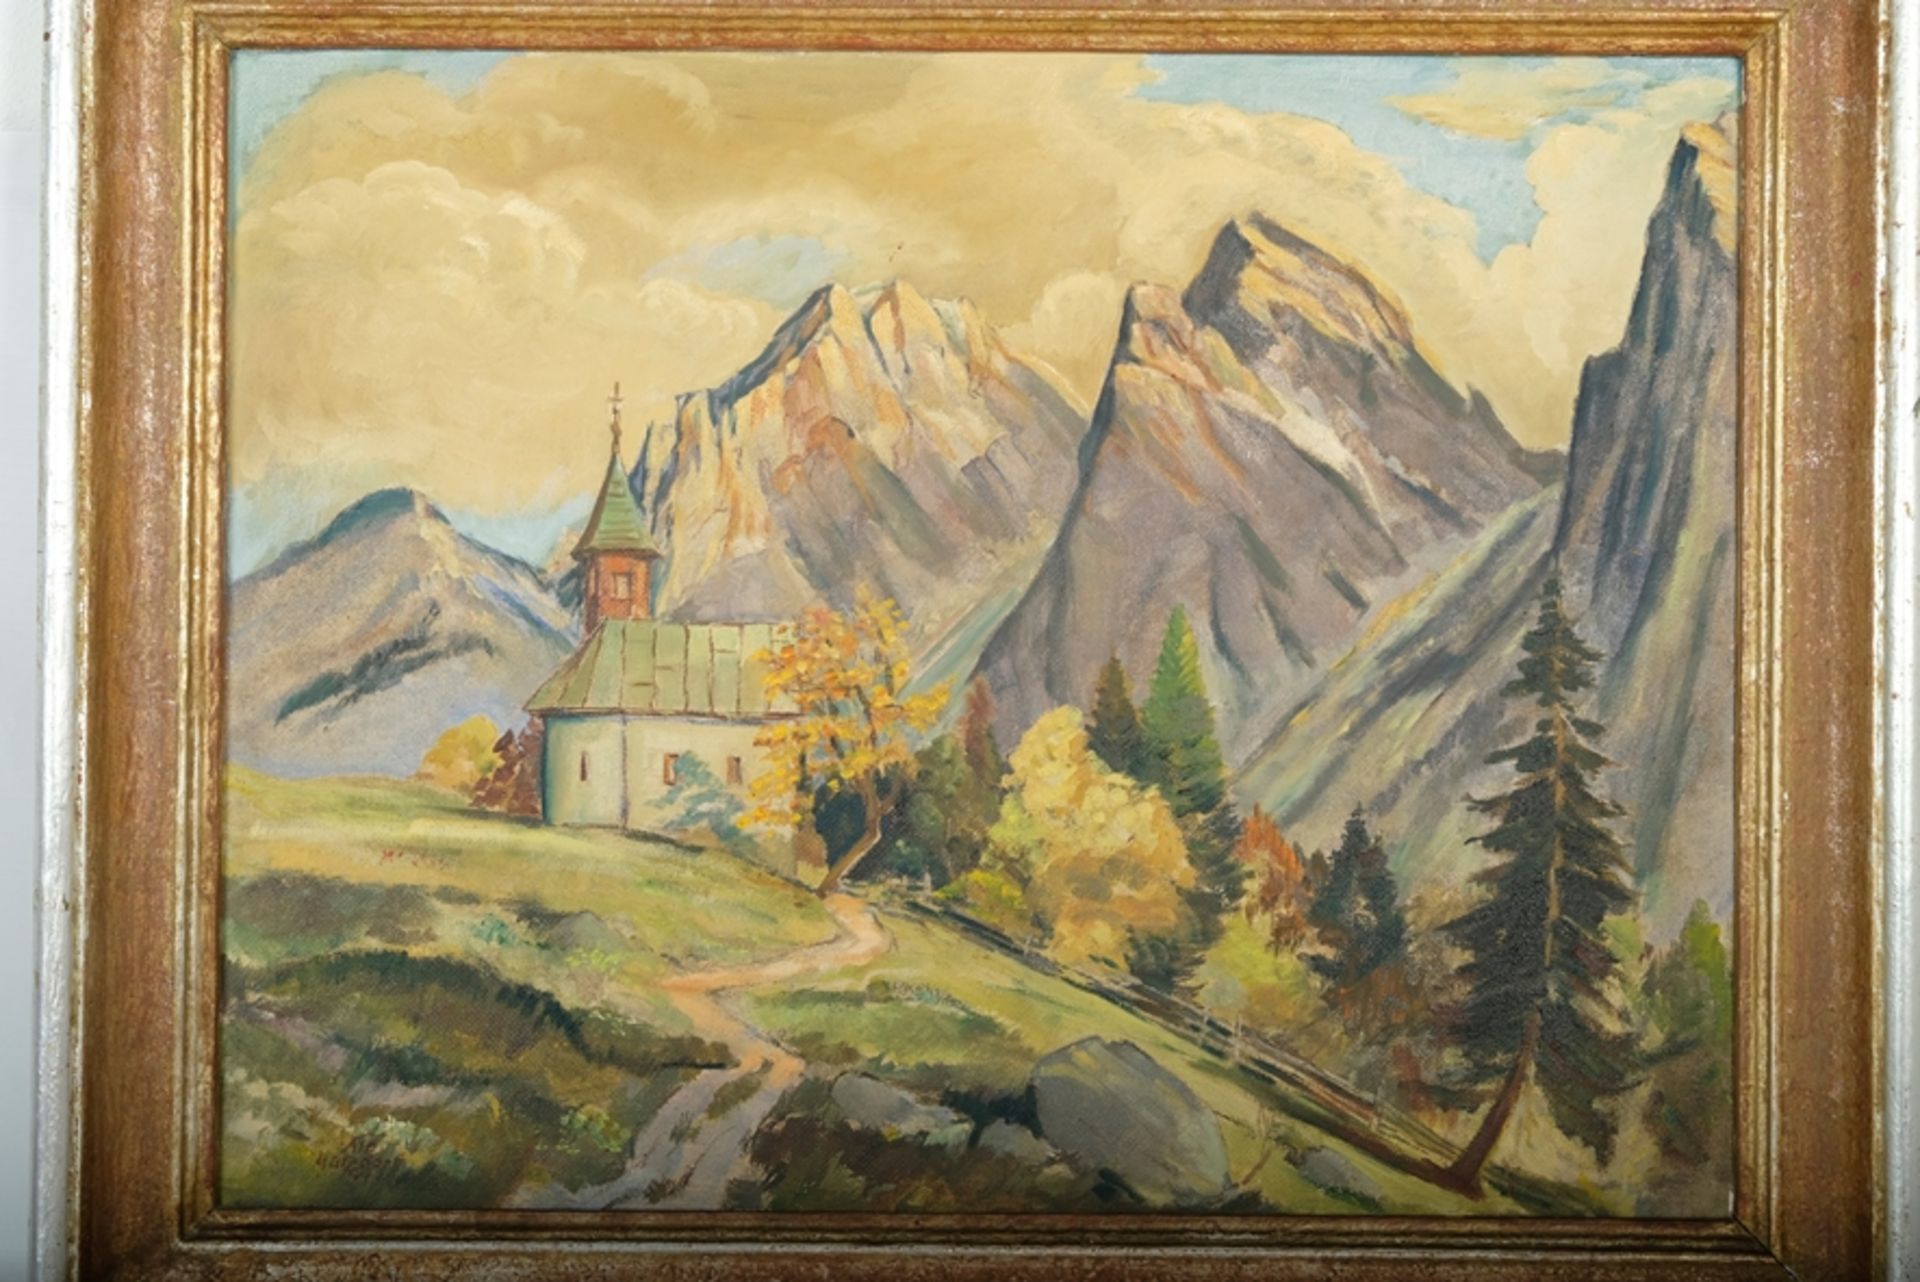 Matzdorf, Albert (1912-1992) Wanderung zu einer Kapelle in den Bergen, Ölgemälde/Pastell auf Leinwa